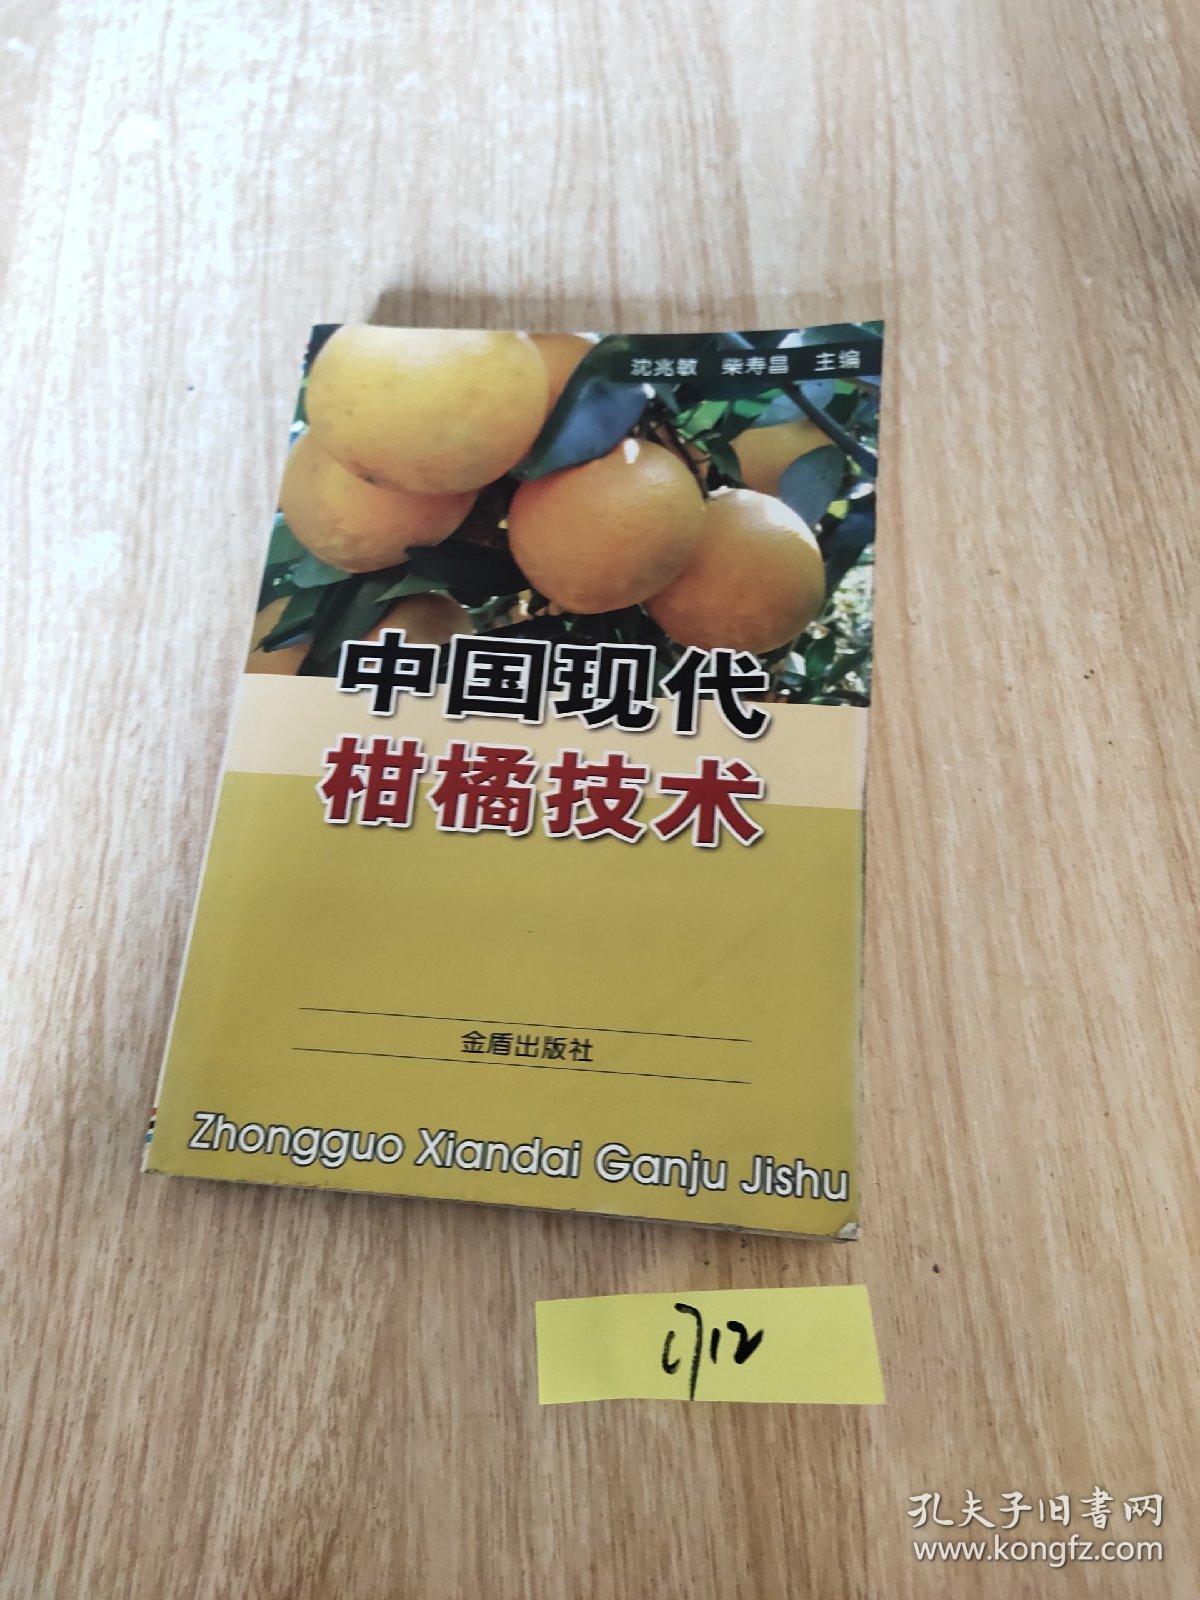 中国现代柑橘技术